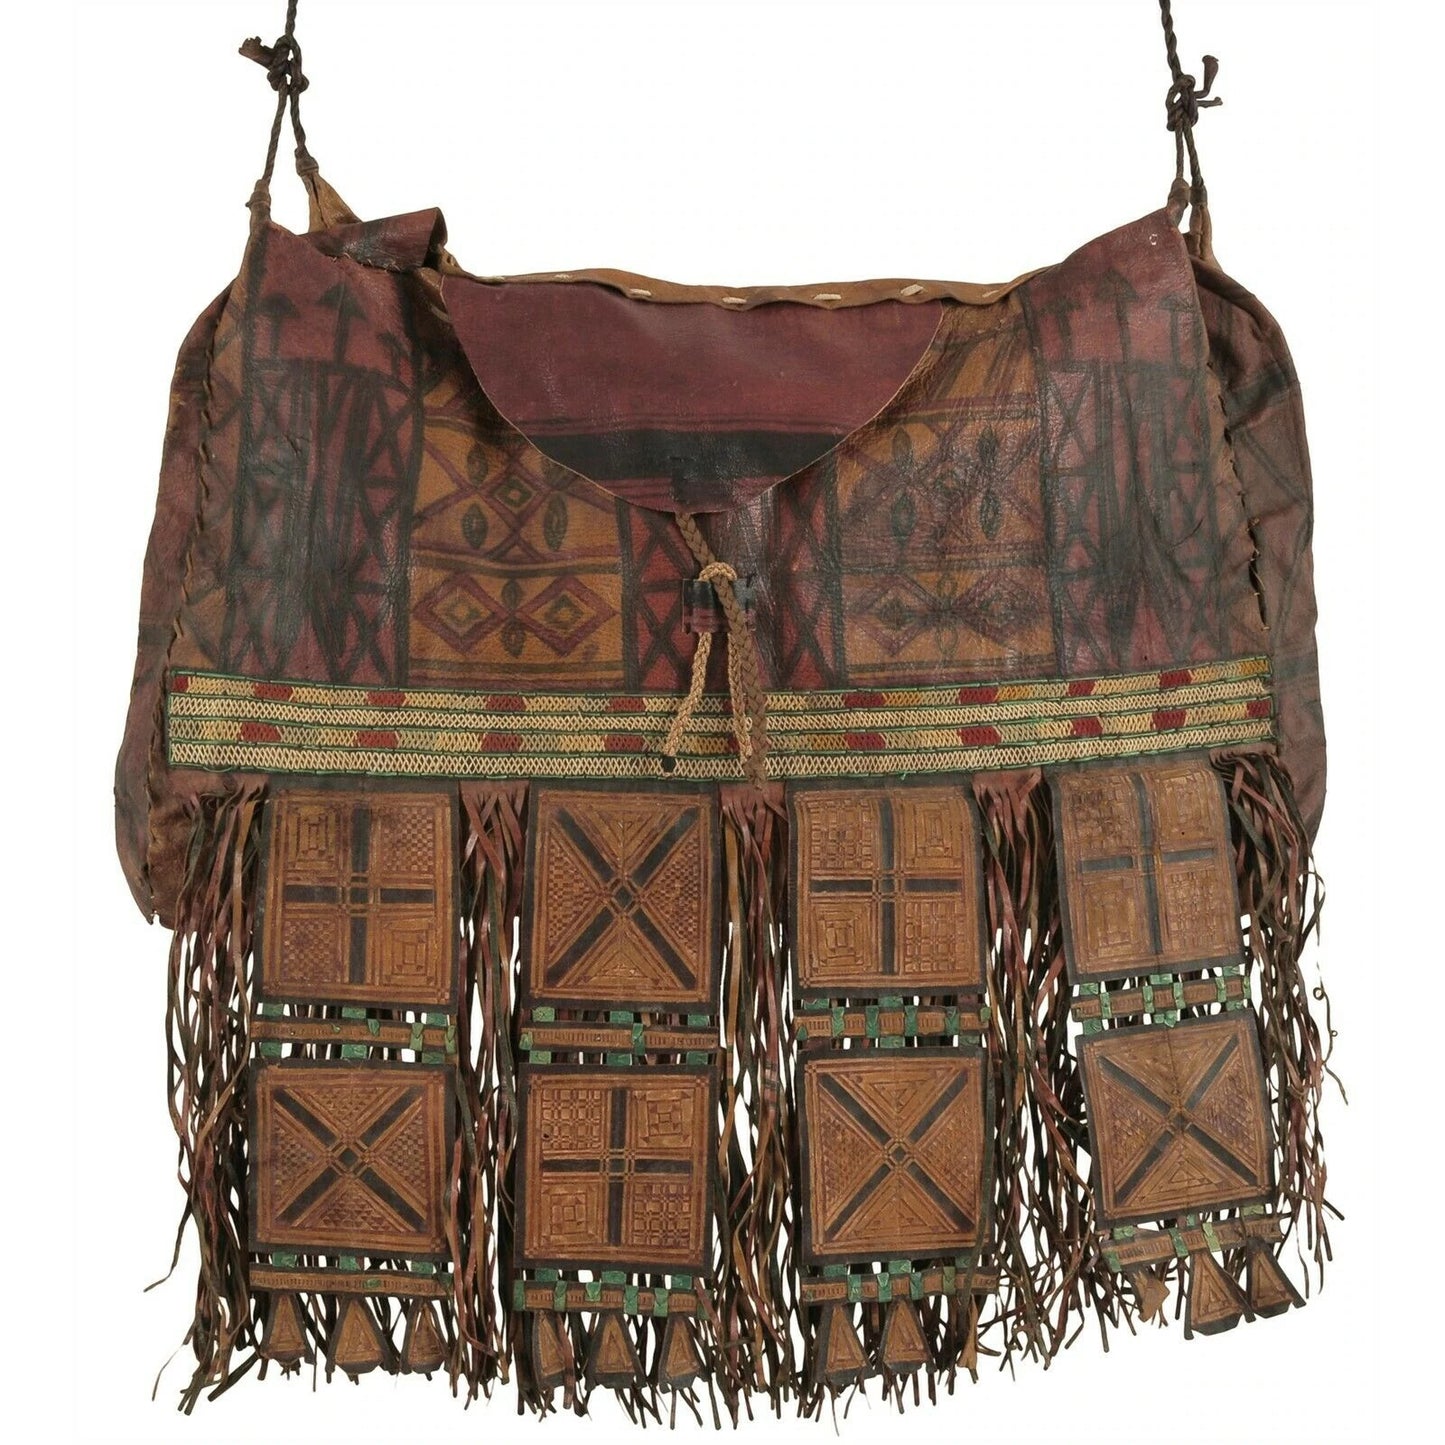 Старая африканская сумка для лошади из кожи туарегов на верблюде из Нигера Peul Fulani Sahara art - Tribalgh